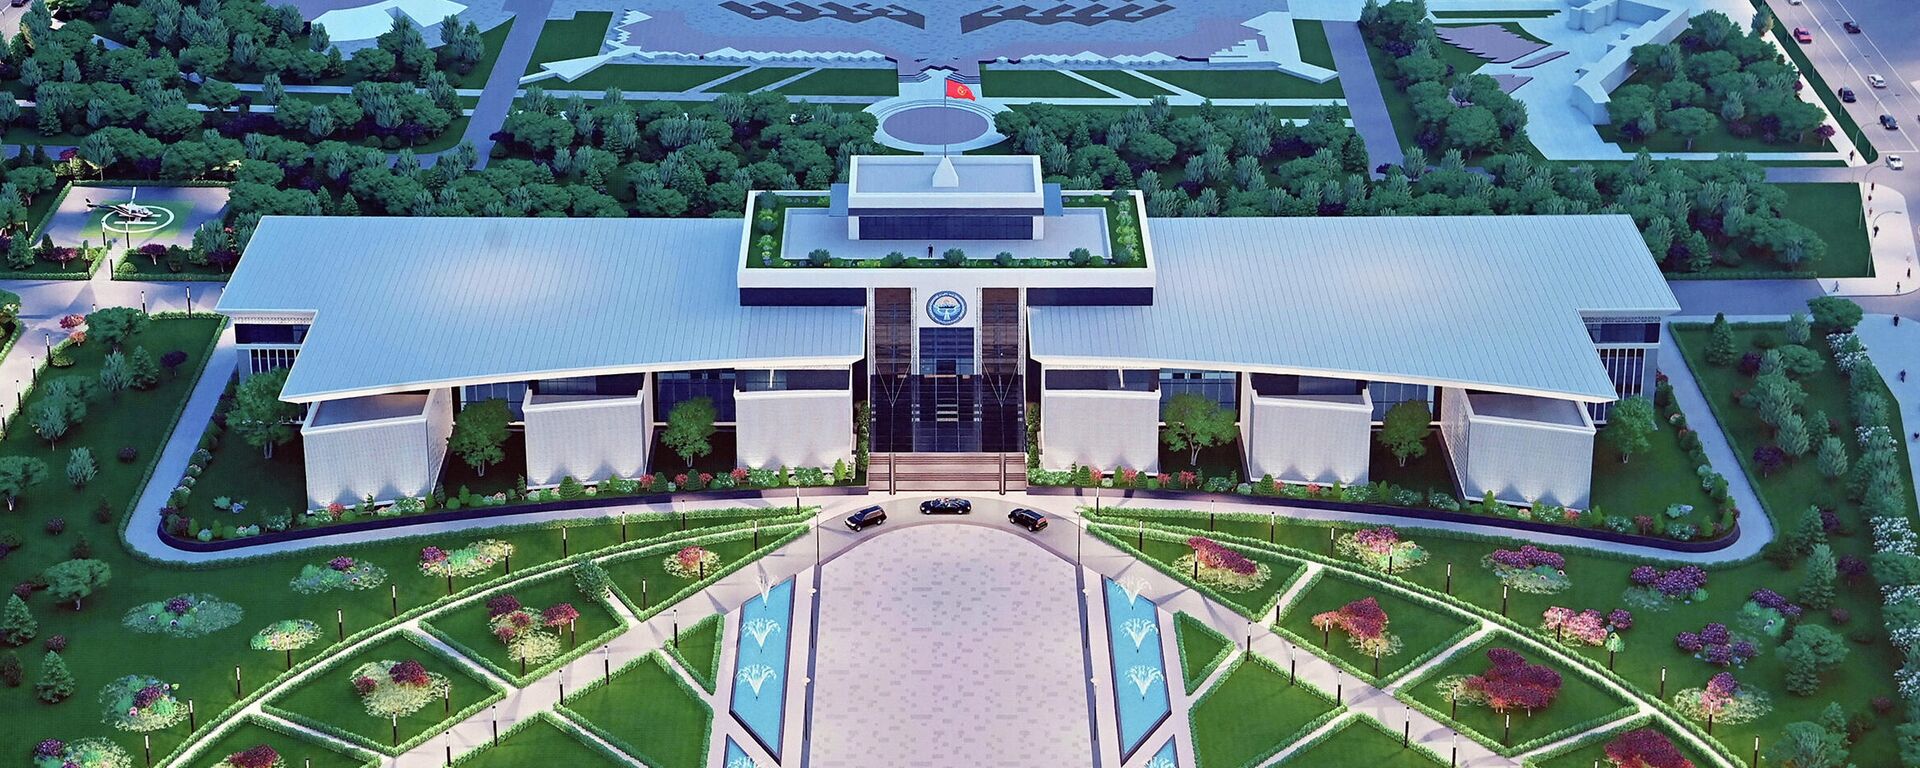 Эскиз будущего здания администрации президента КР - Sputnik Кыргызстан, 1920, 16.04.2022